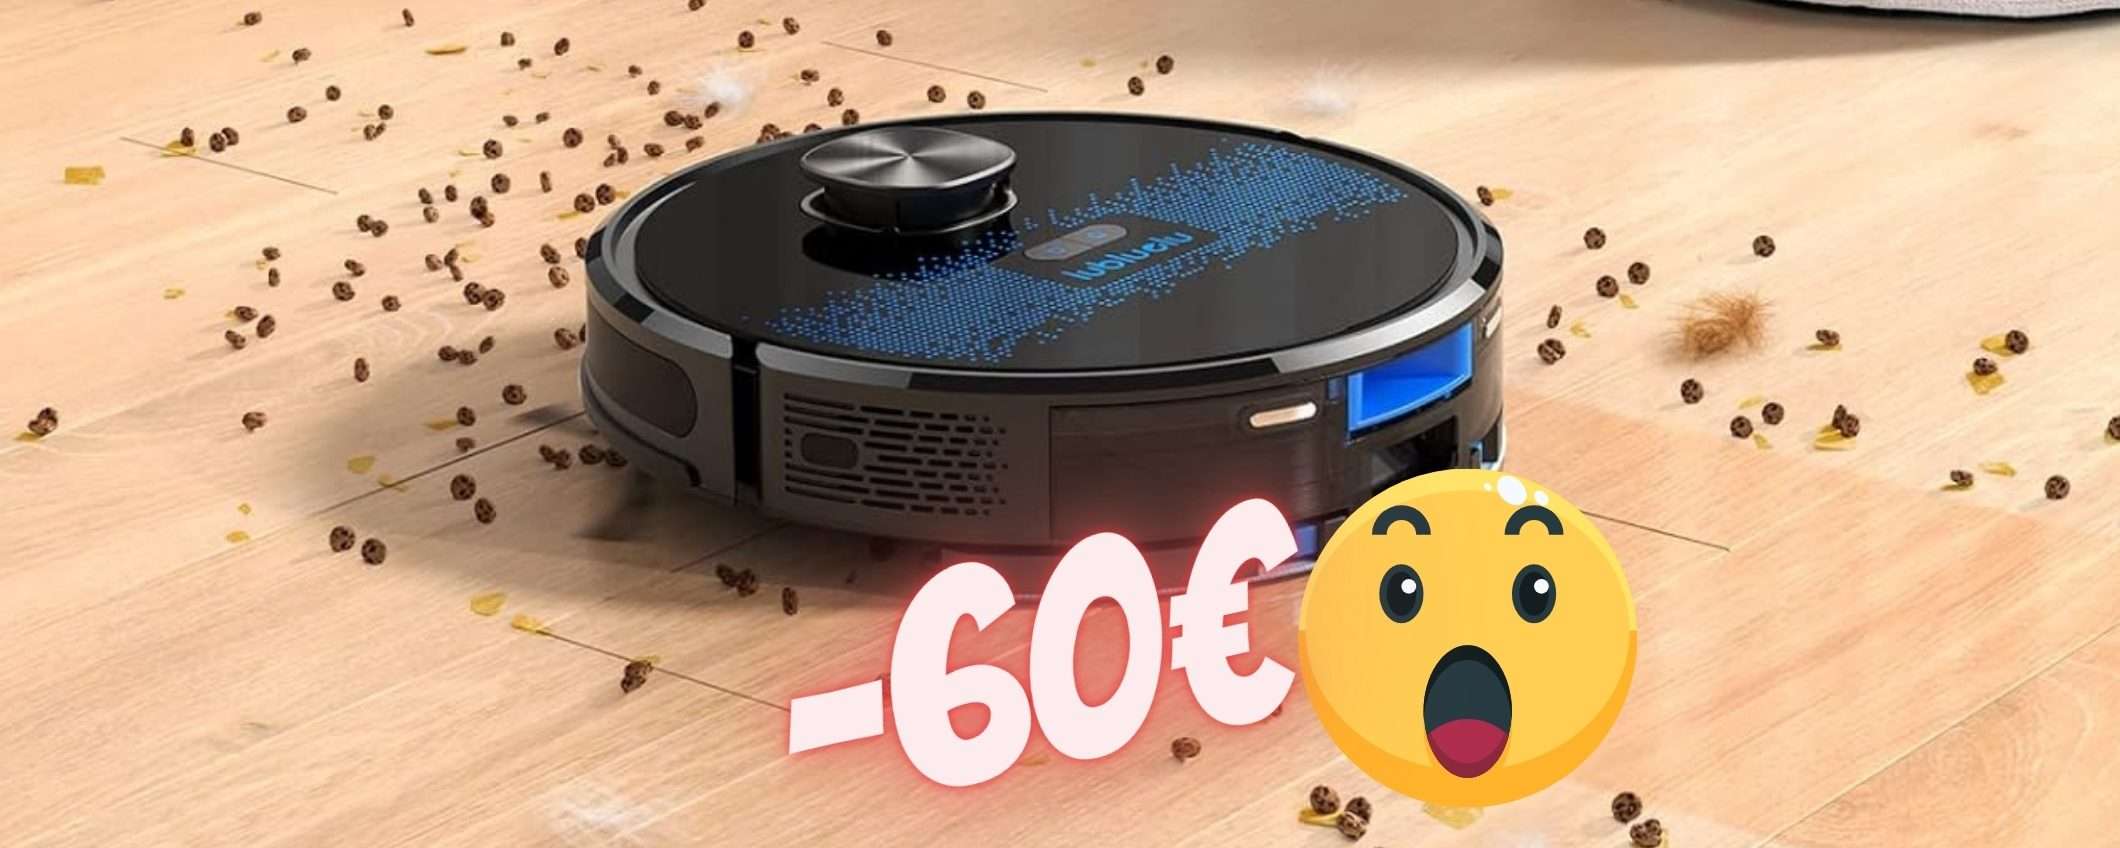 Robot aspirapolvere lavapavimenti con remote control in SCONTO di 60€